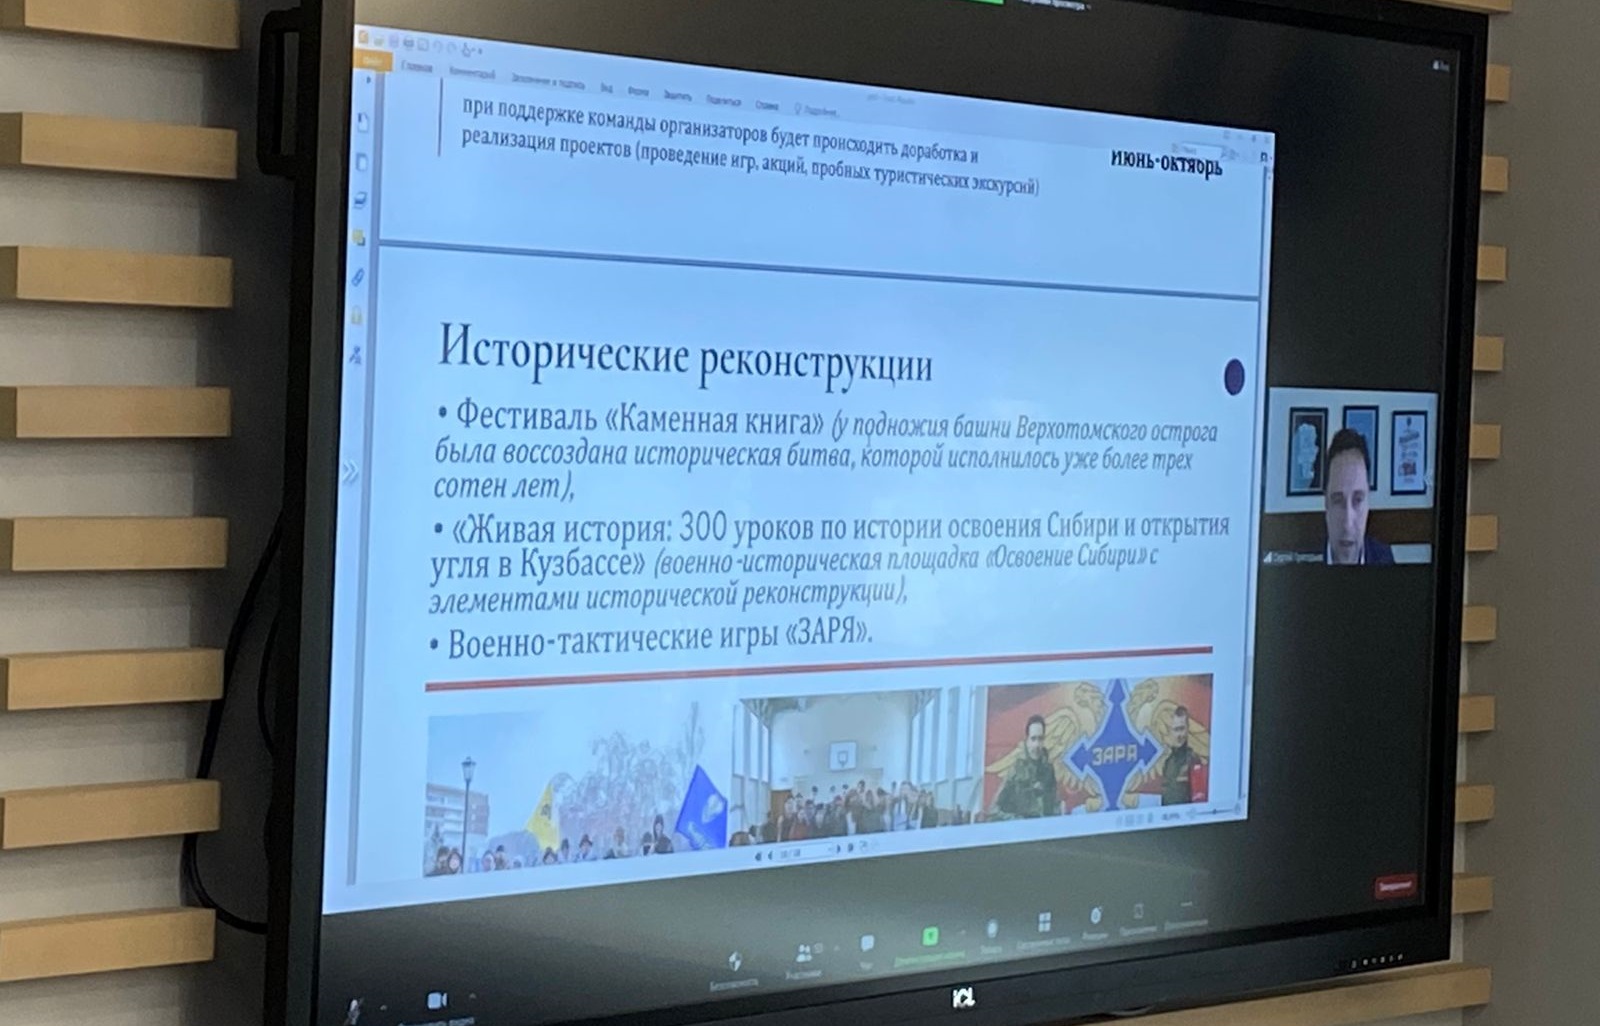 Заседание межведомственного координационного совета по патриотическому воспитанию состоялось в Кузбассе 